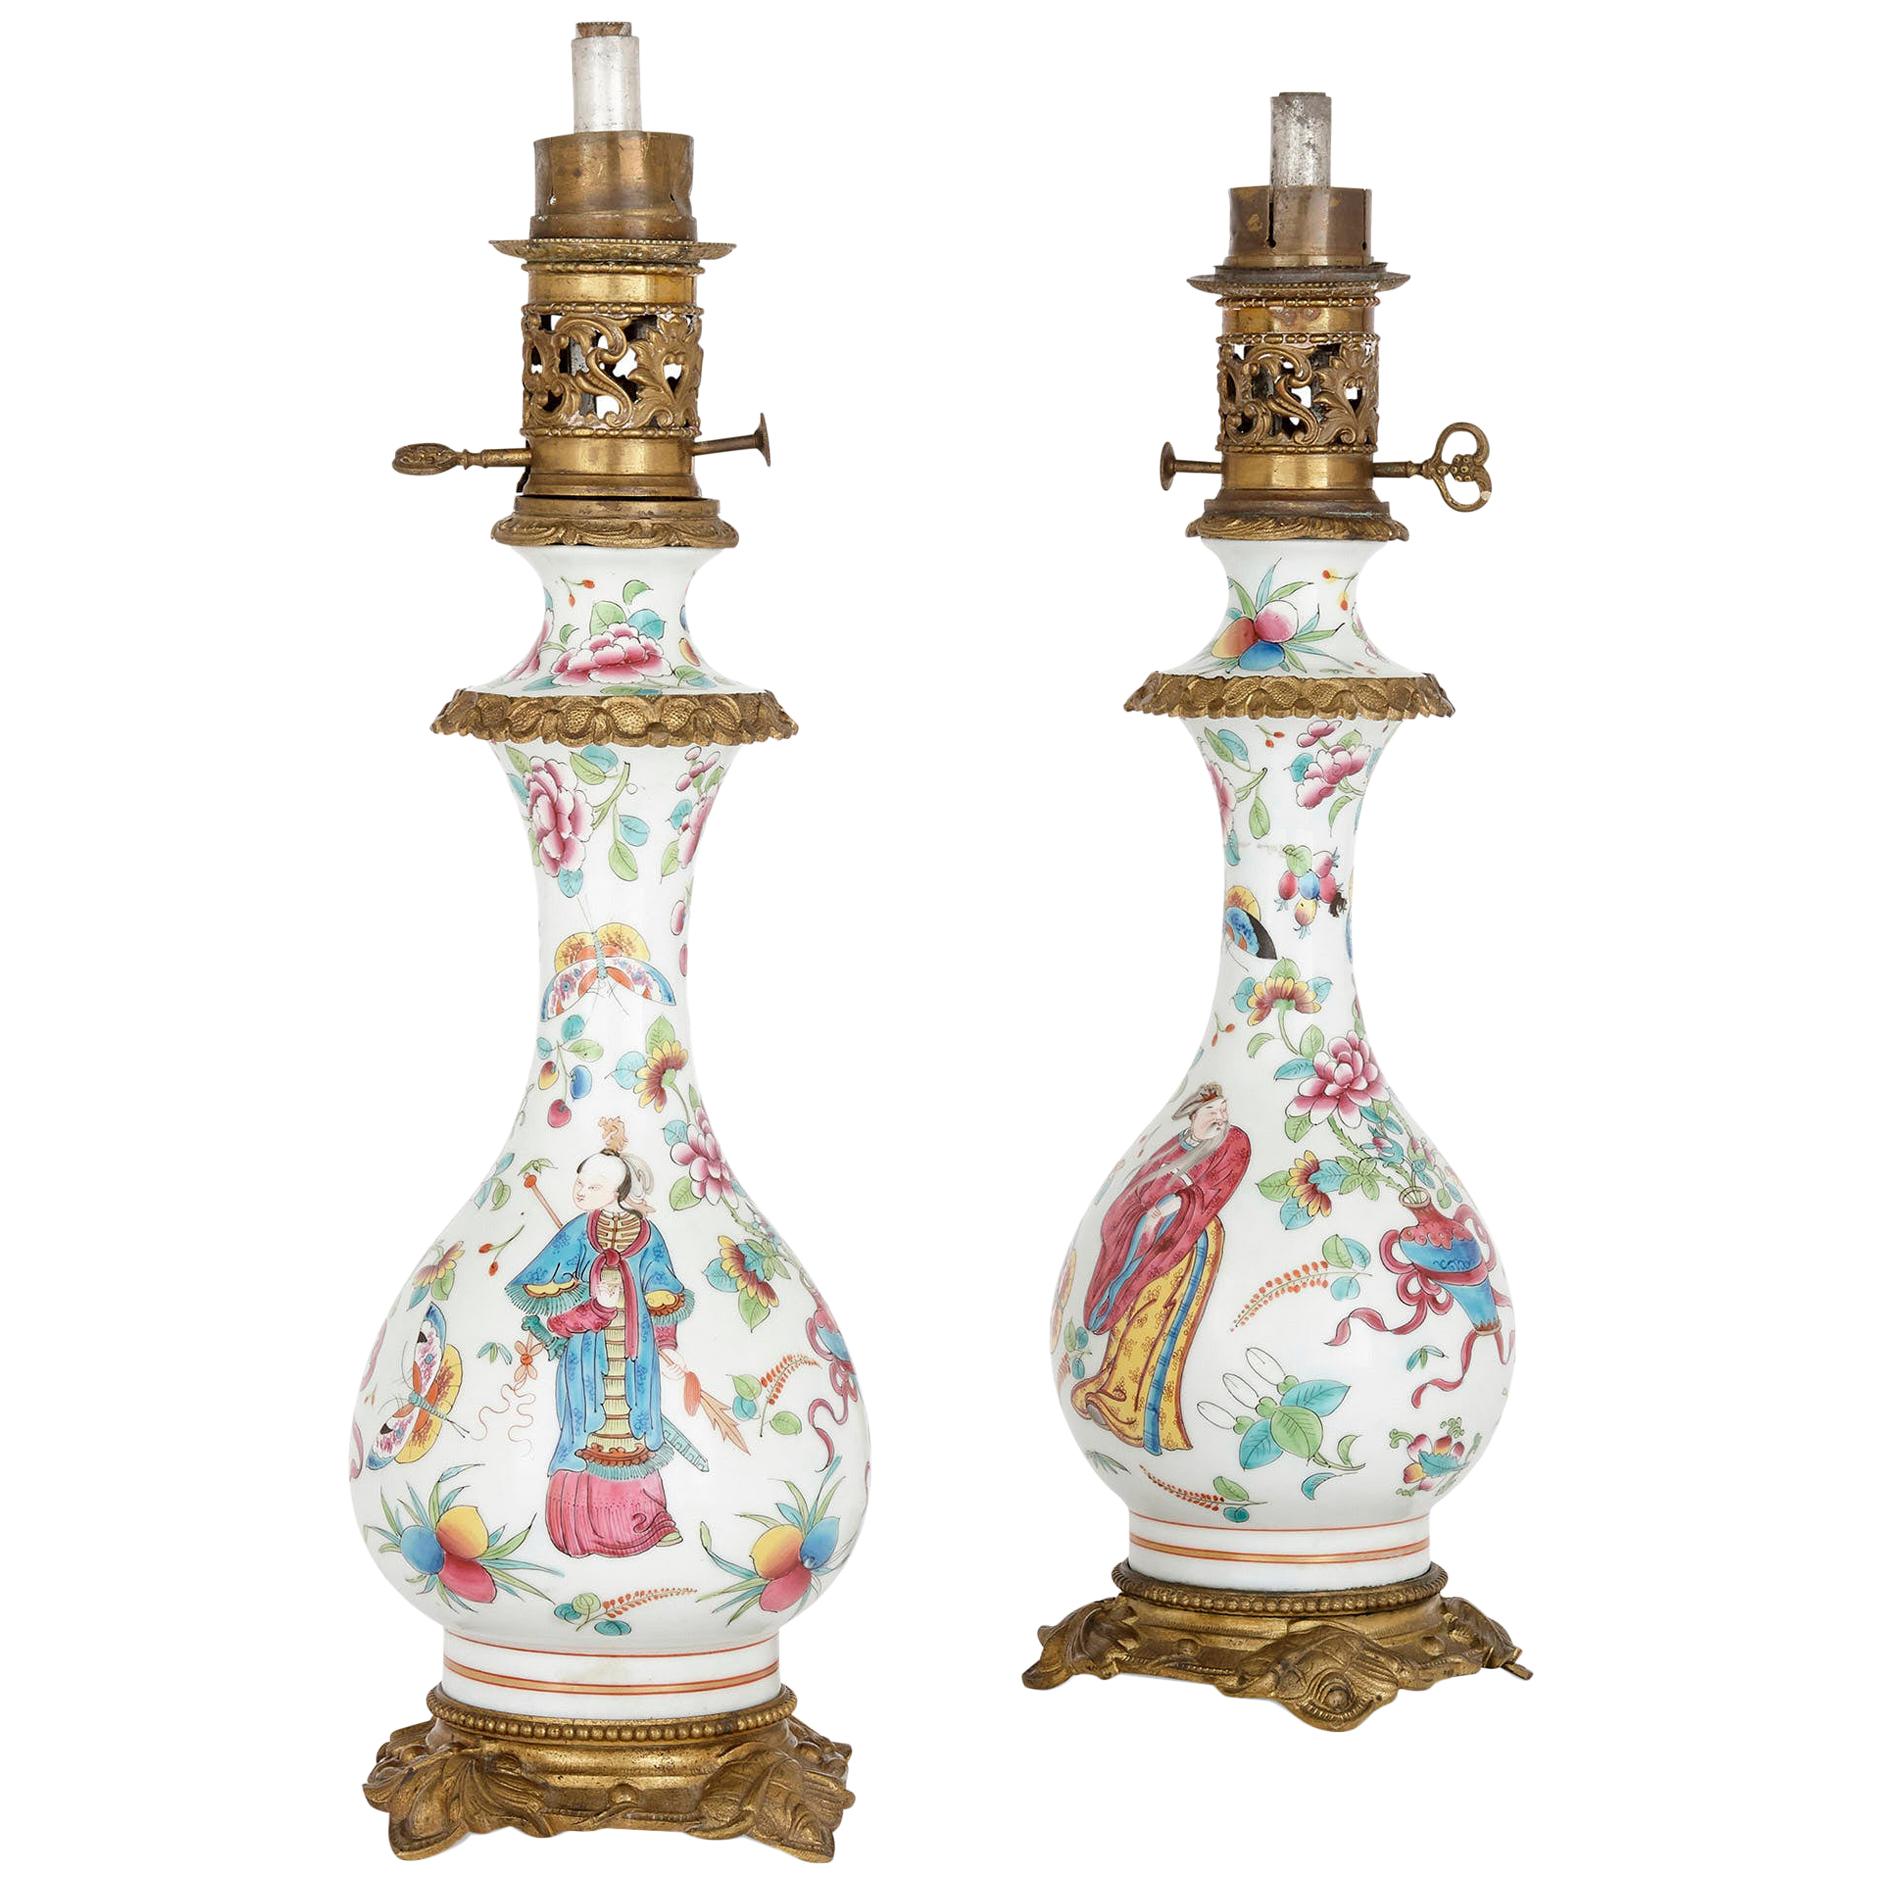 Paire de lampes à huile en porcelaine montées sur bronze doré de style chinoiserie française